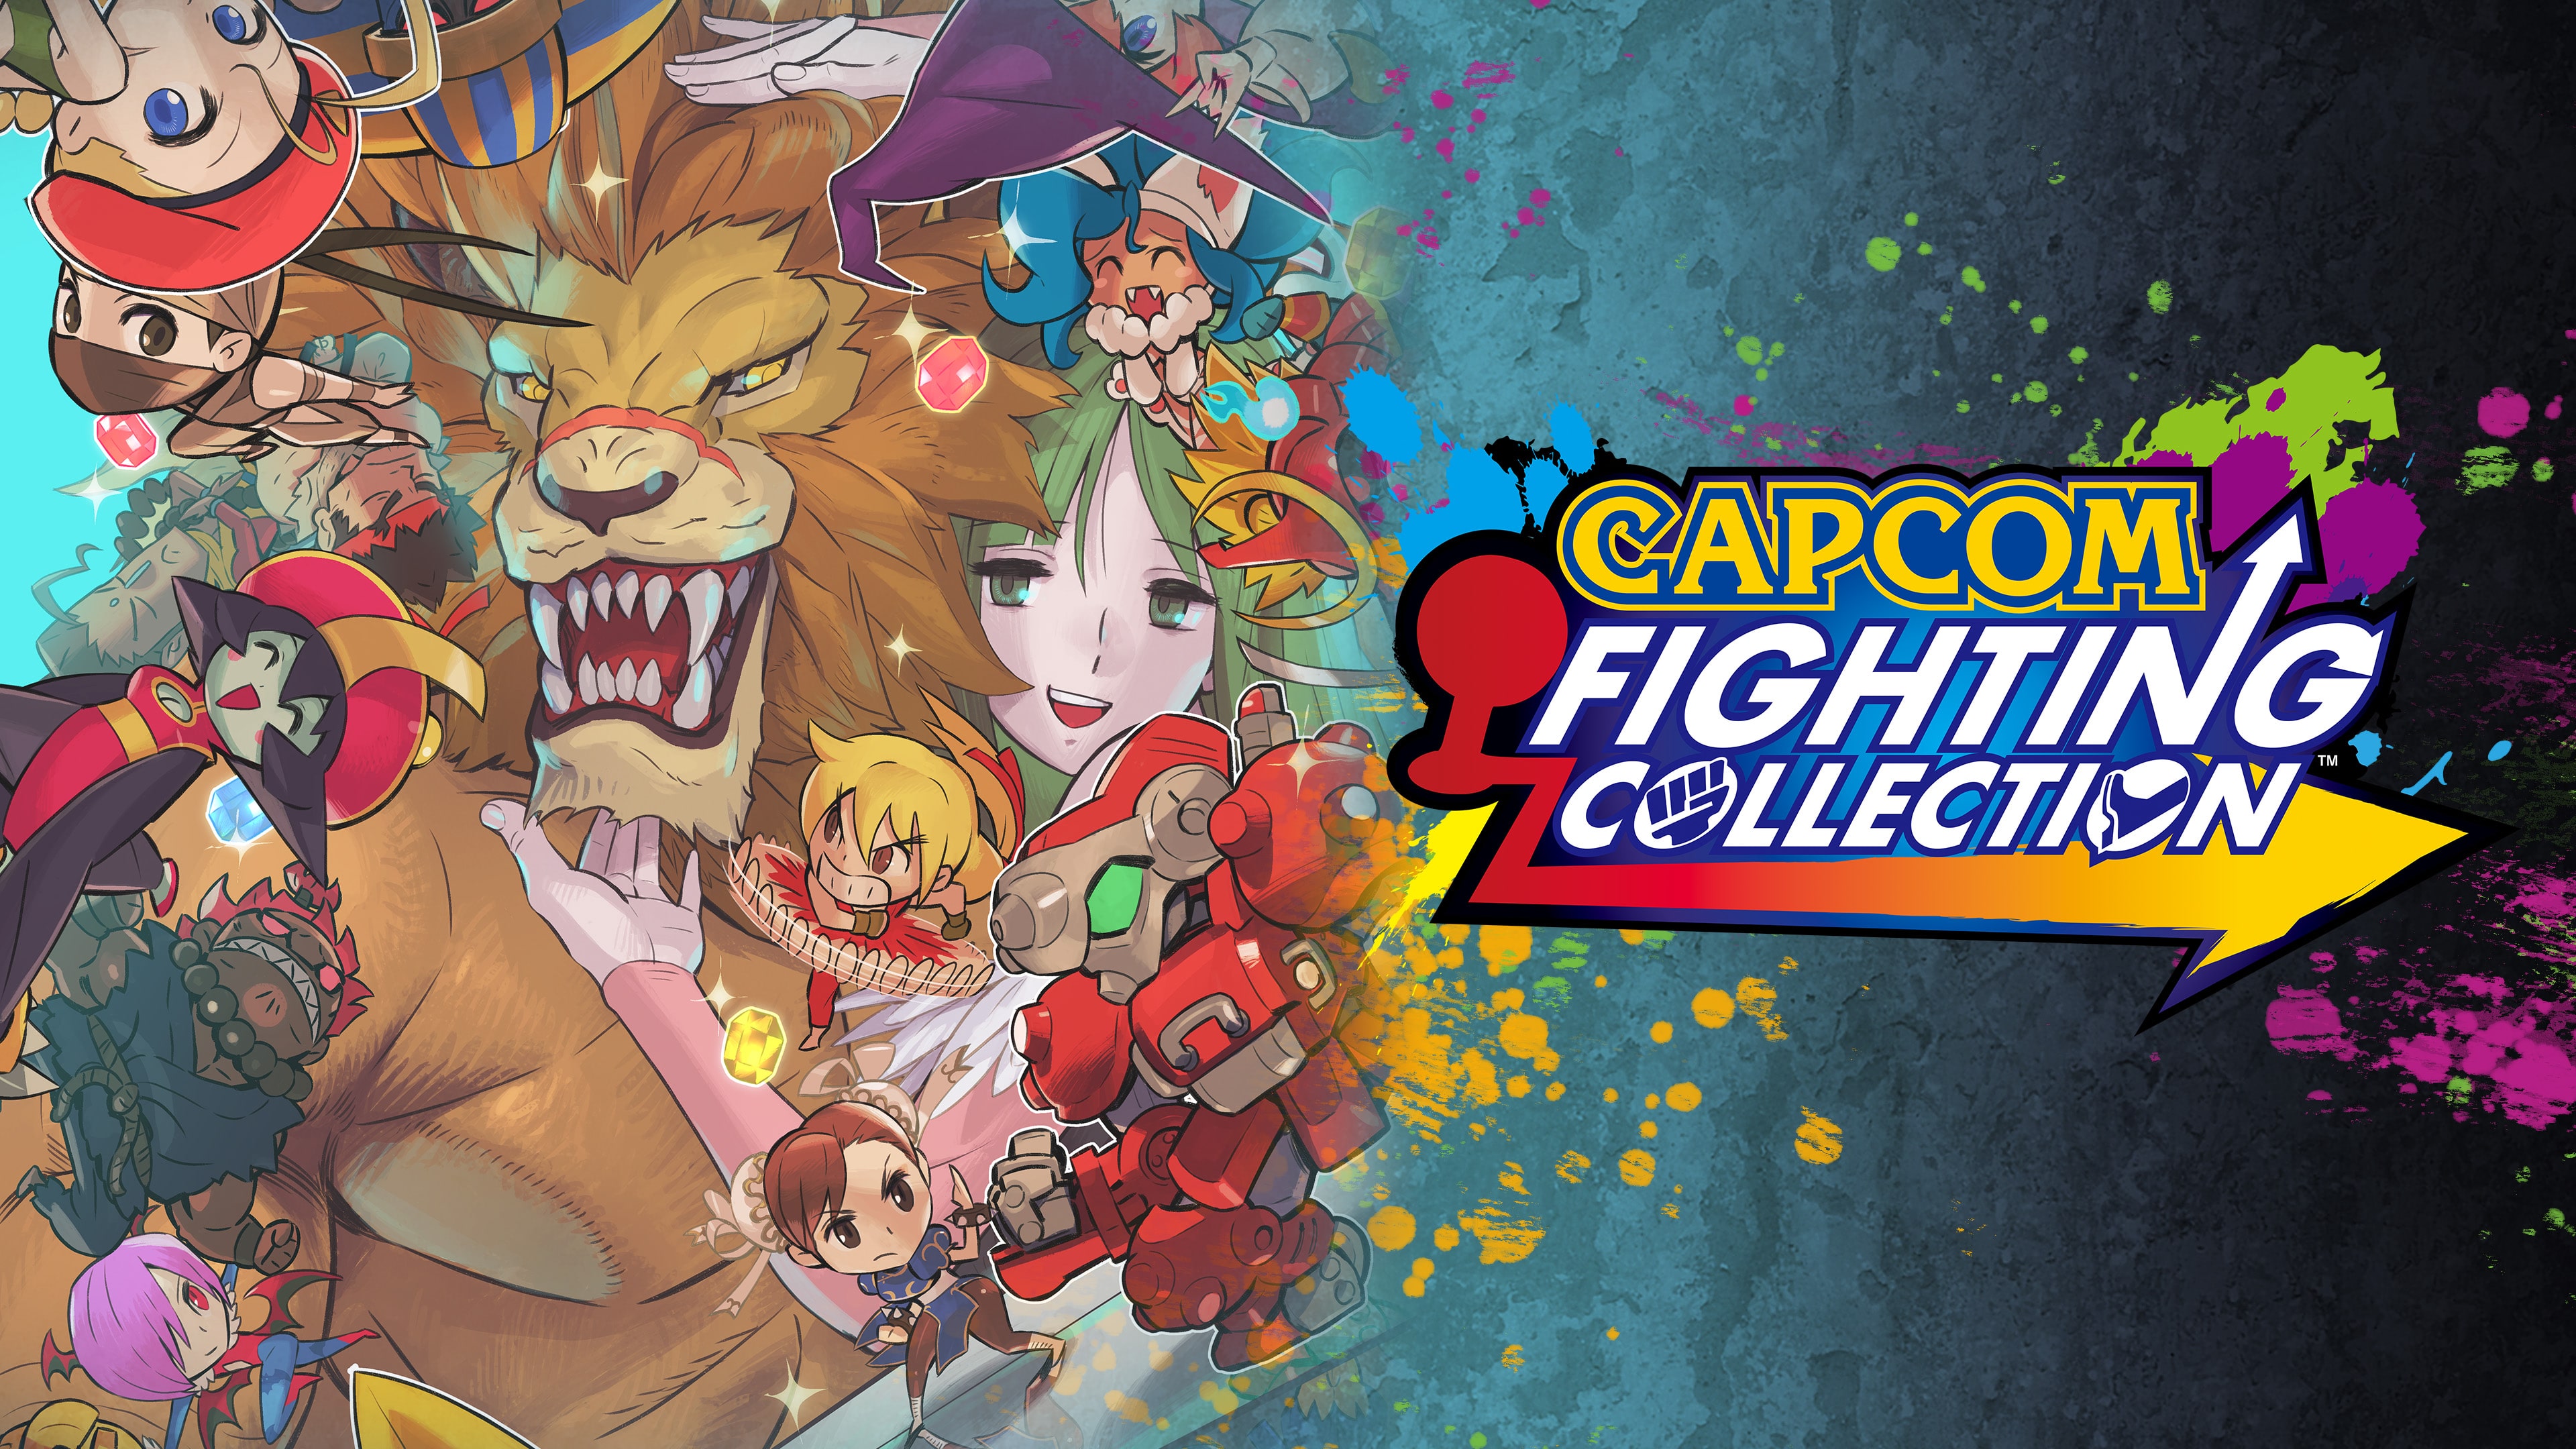 Capcom Fighting Collection (중국어(간체자), 한국어, 영어, 일본어, 중국어(번체자))